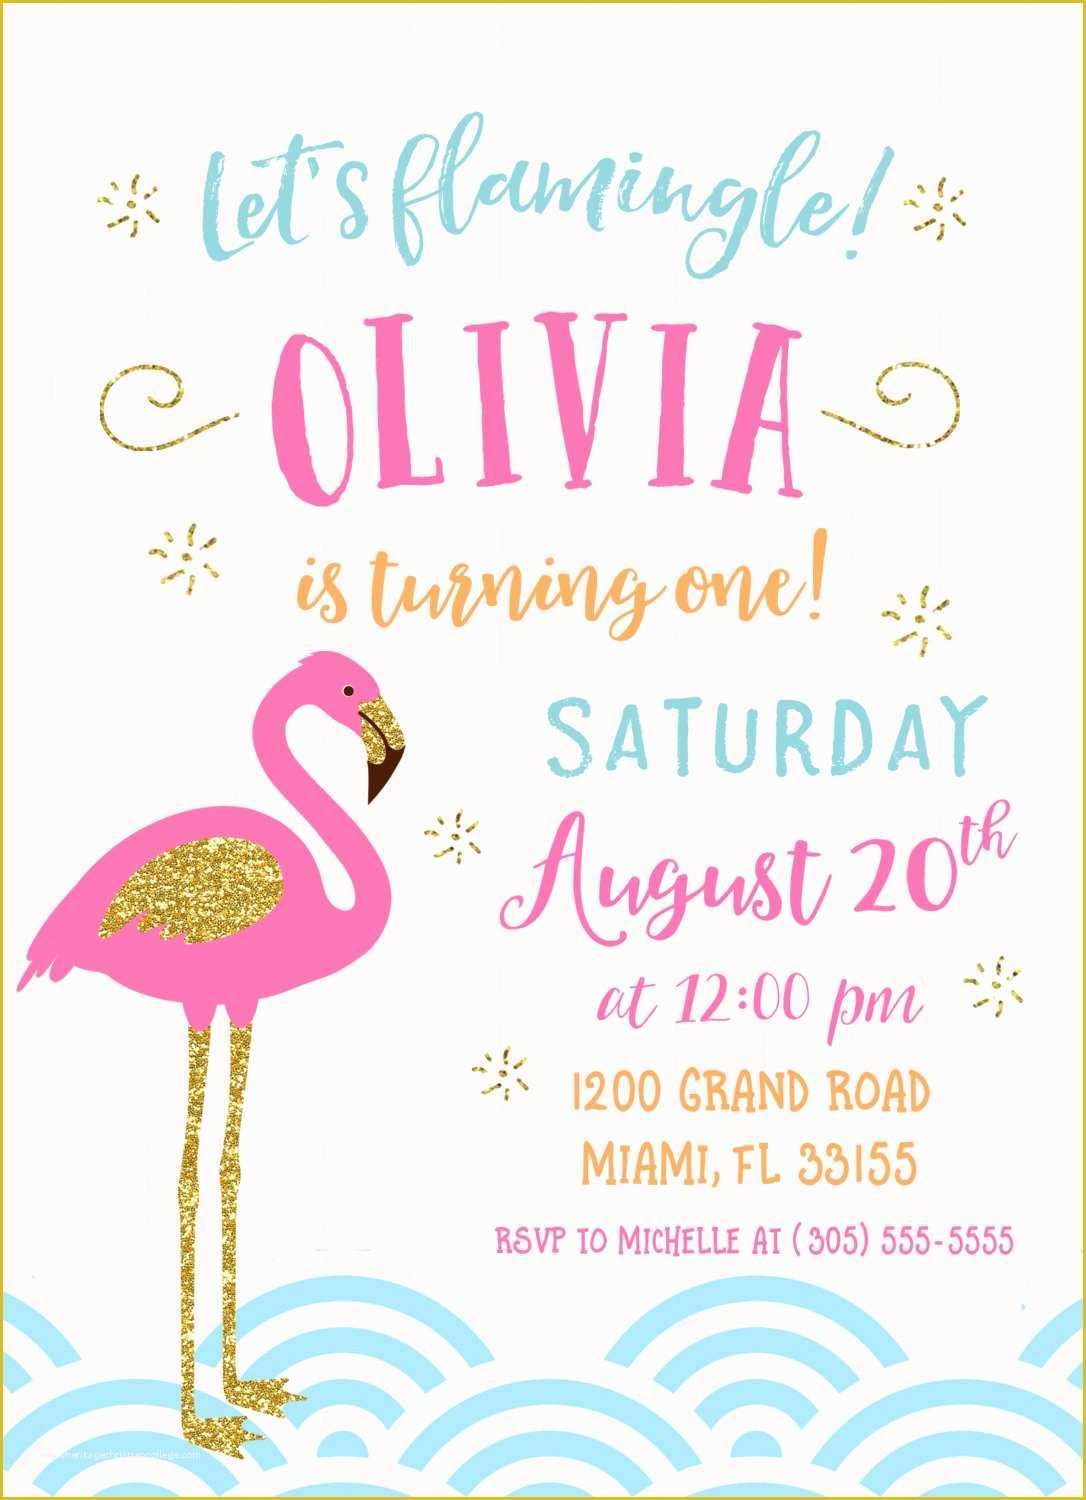 Flamingo Invitation Template Free Of Flamingo Invitation Let S Flamingle Invitation Flamingo